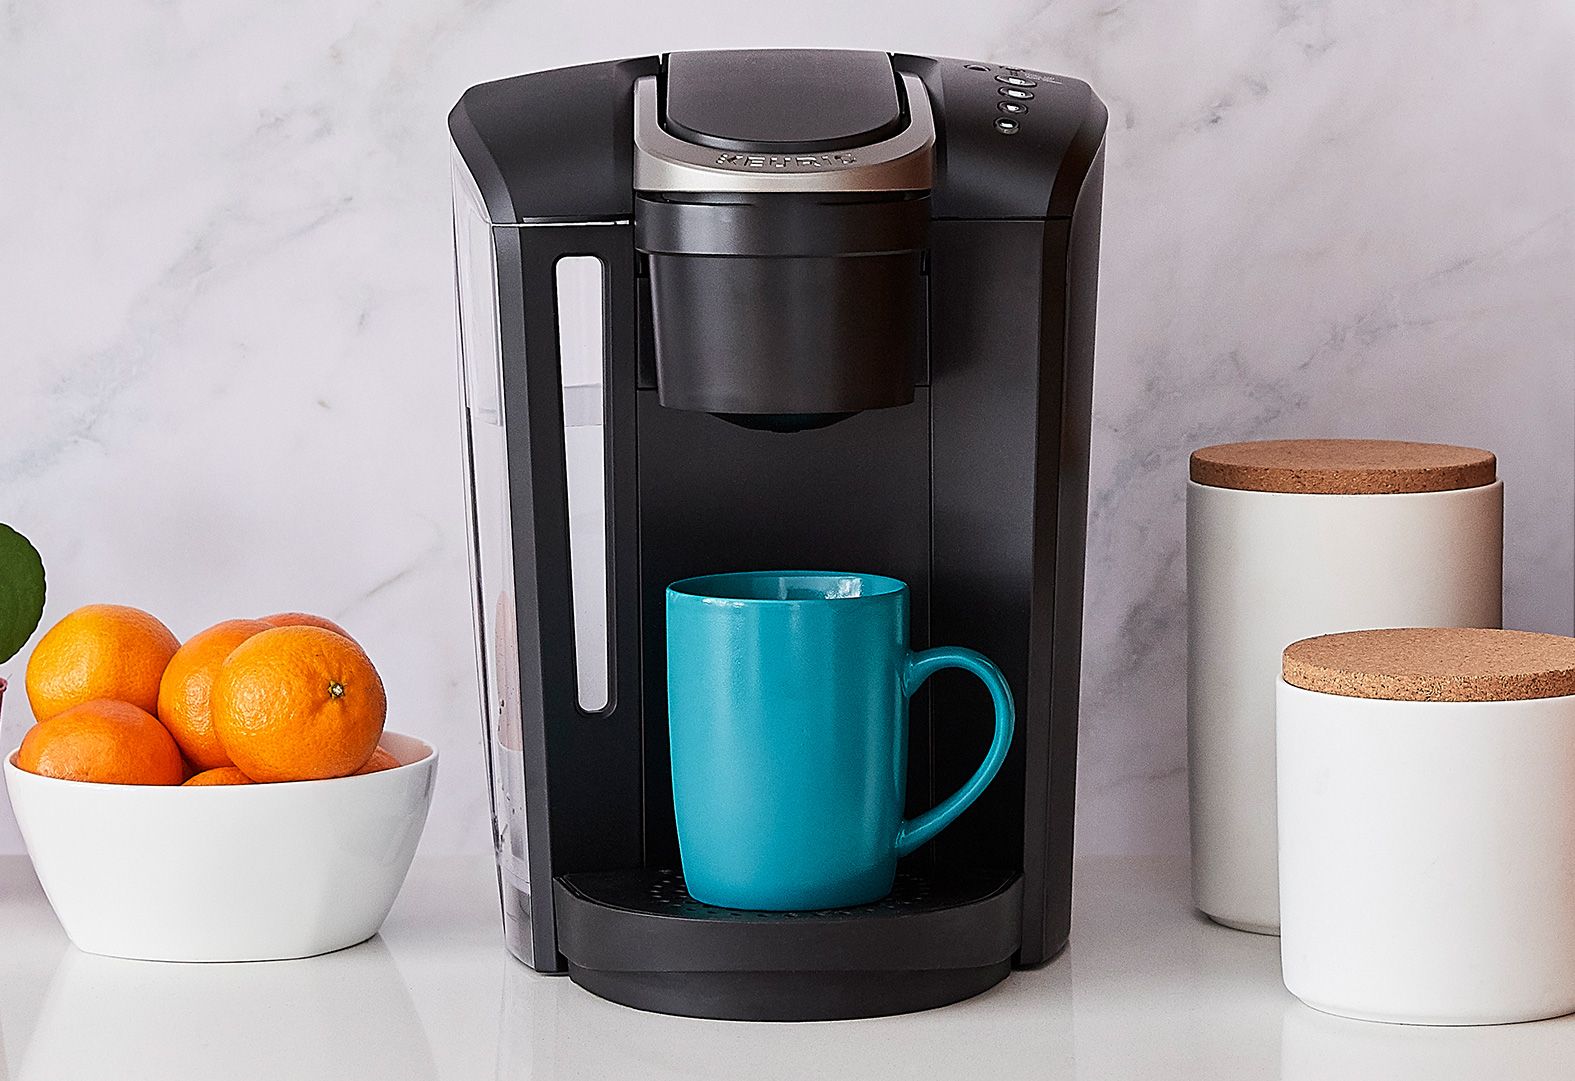 Keurig® Single Serve Coffee Makers & K-Cup® Pods | Keurig®